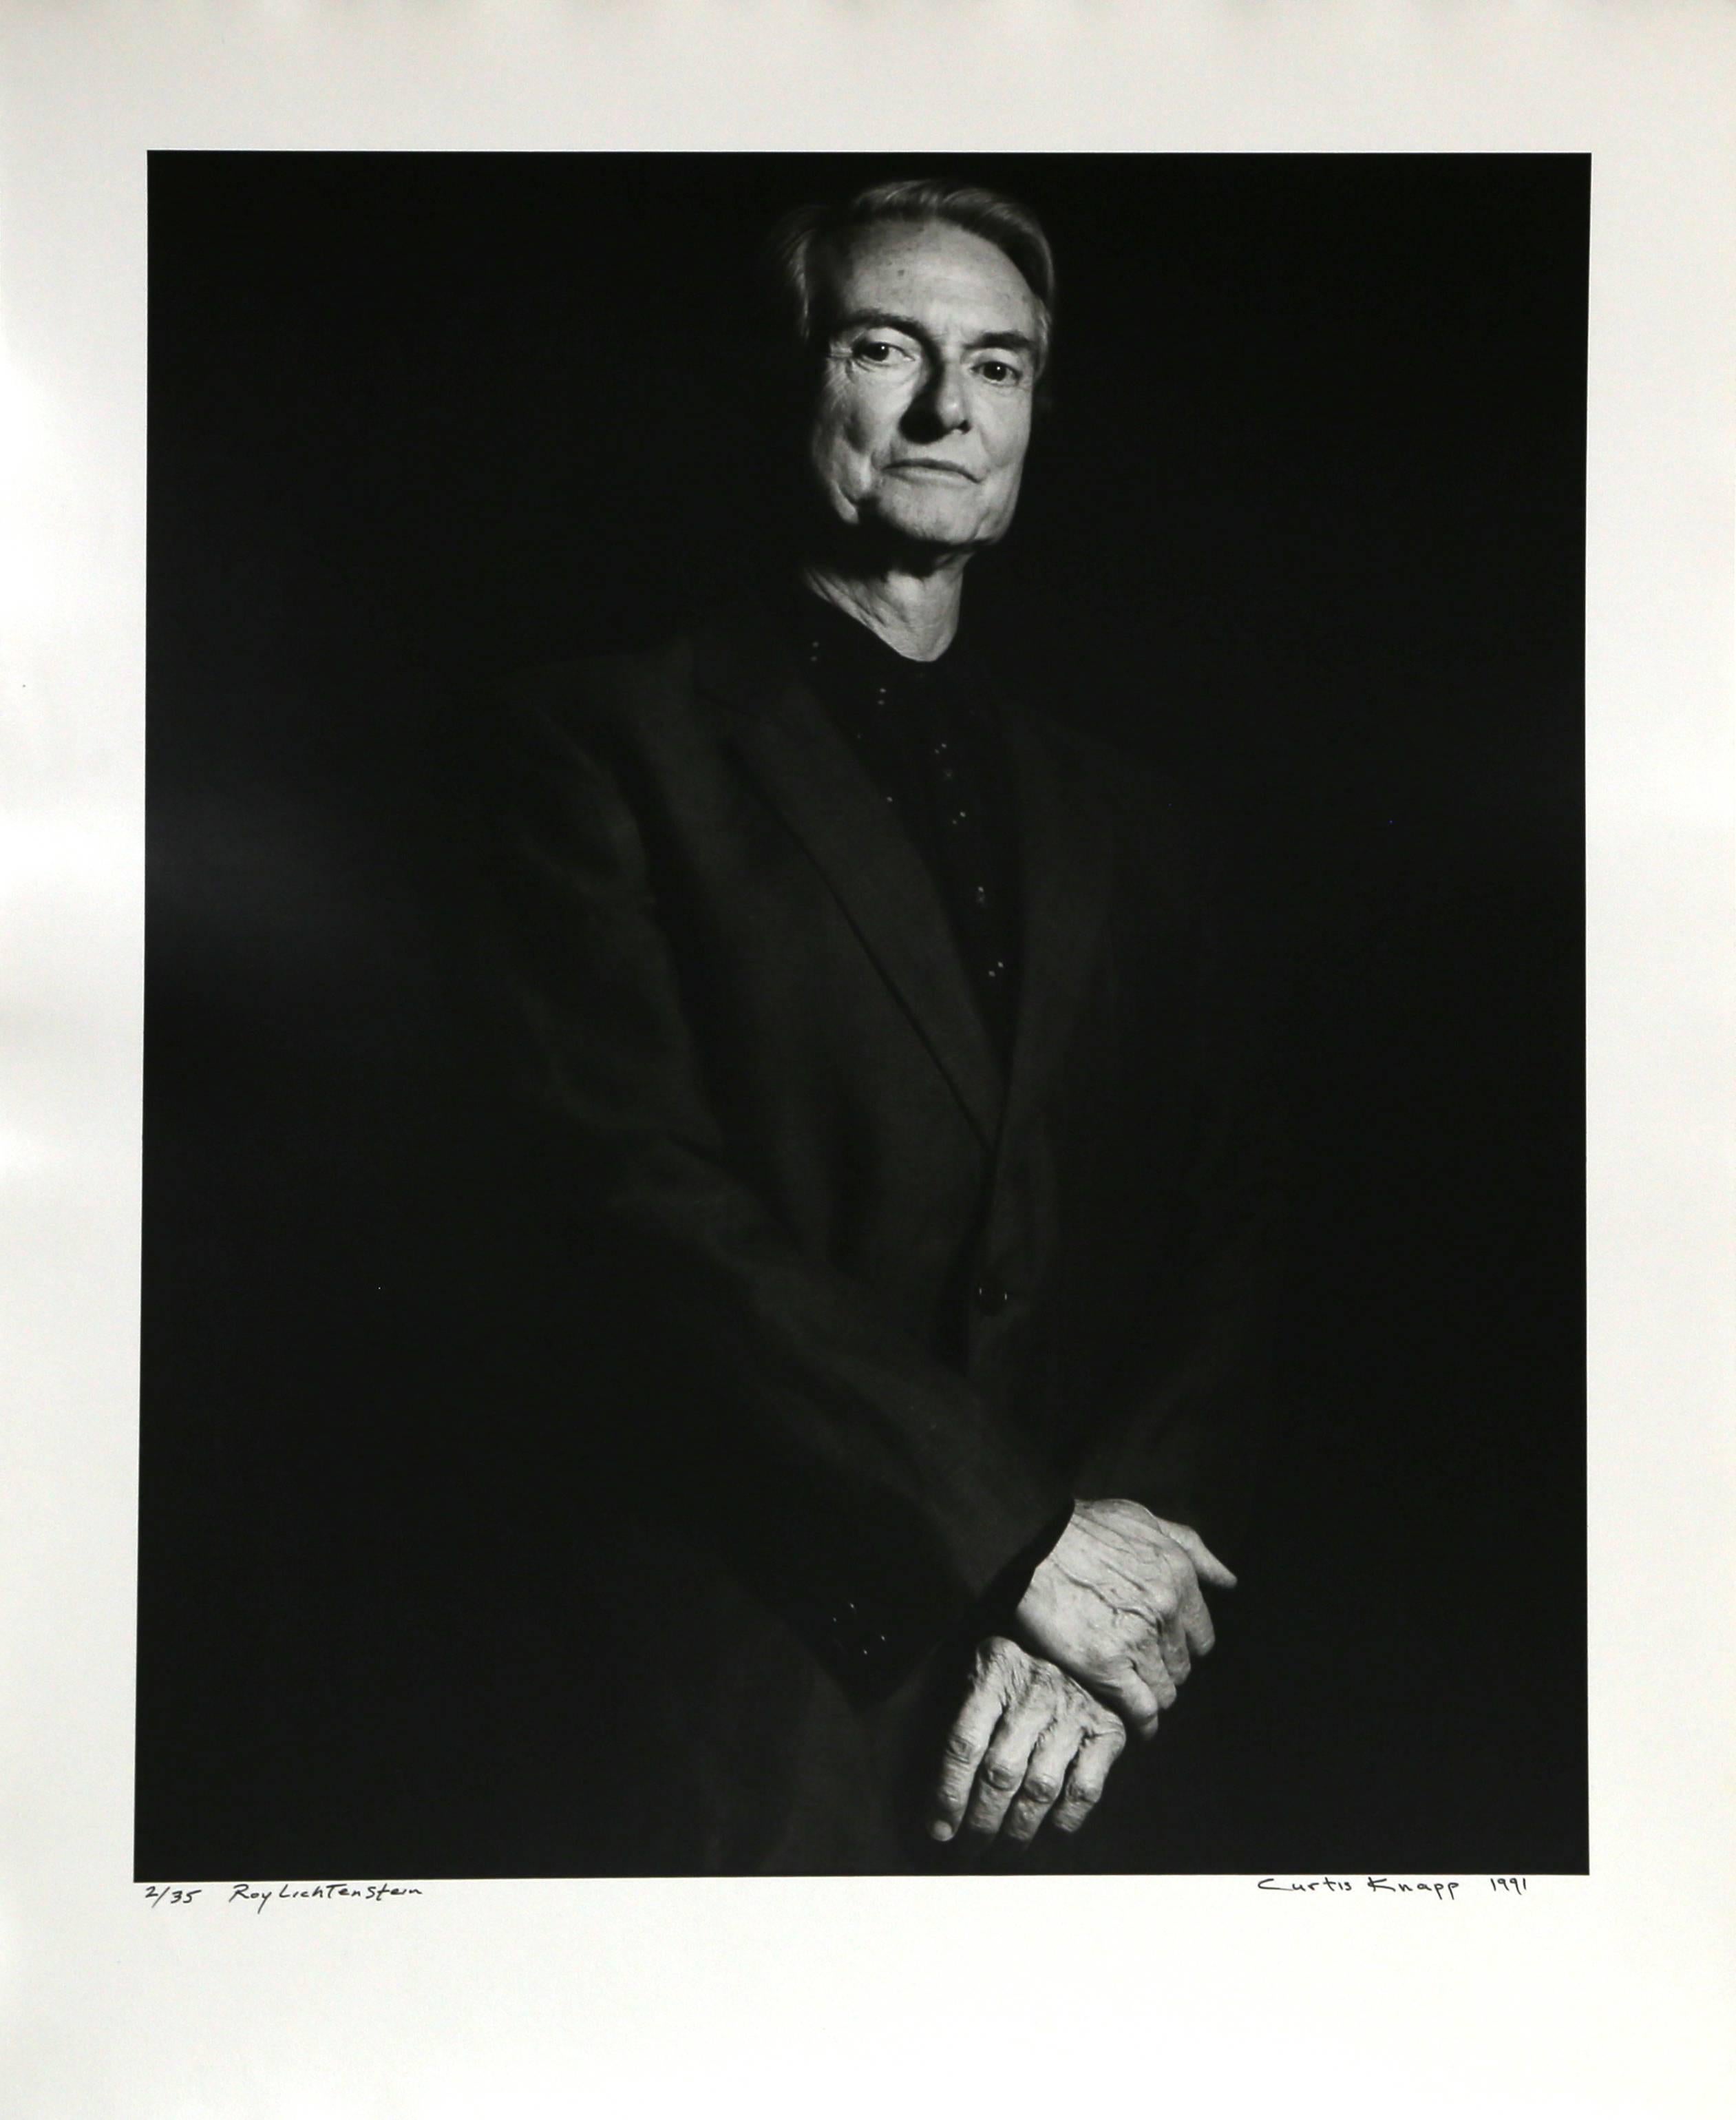 Artiste : Curtis Knapp, américain
Titre : Roy Lichtenstein
Année : 1990 (imprimé en 1991)
Moyen : Tirage argentique sur papier fibre, signé et numéroté à l'encre
Edition : 35 
Taille : 20 in. x 16 in. (50,8 cm x 40,64 cm)